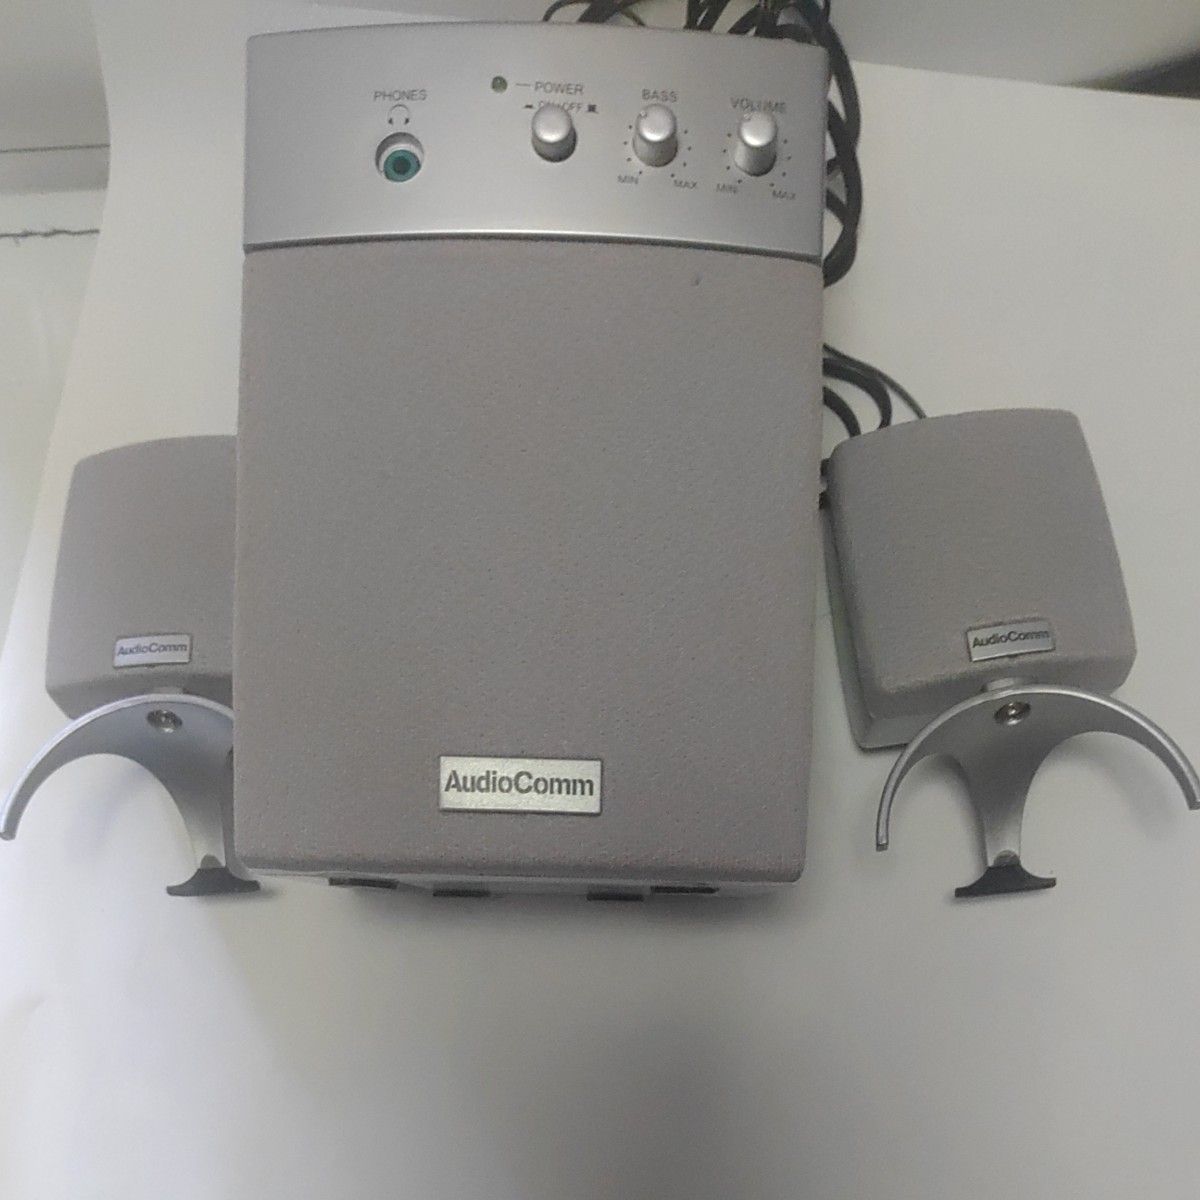 オーム電機の3DスピーカーASP-1300 Fi